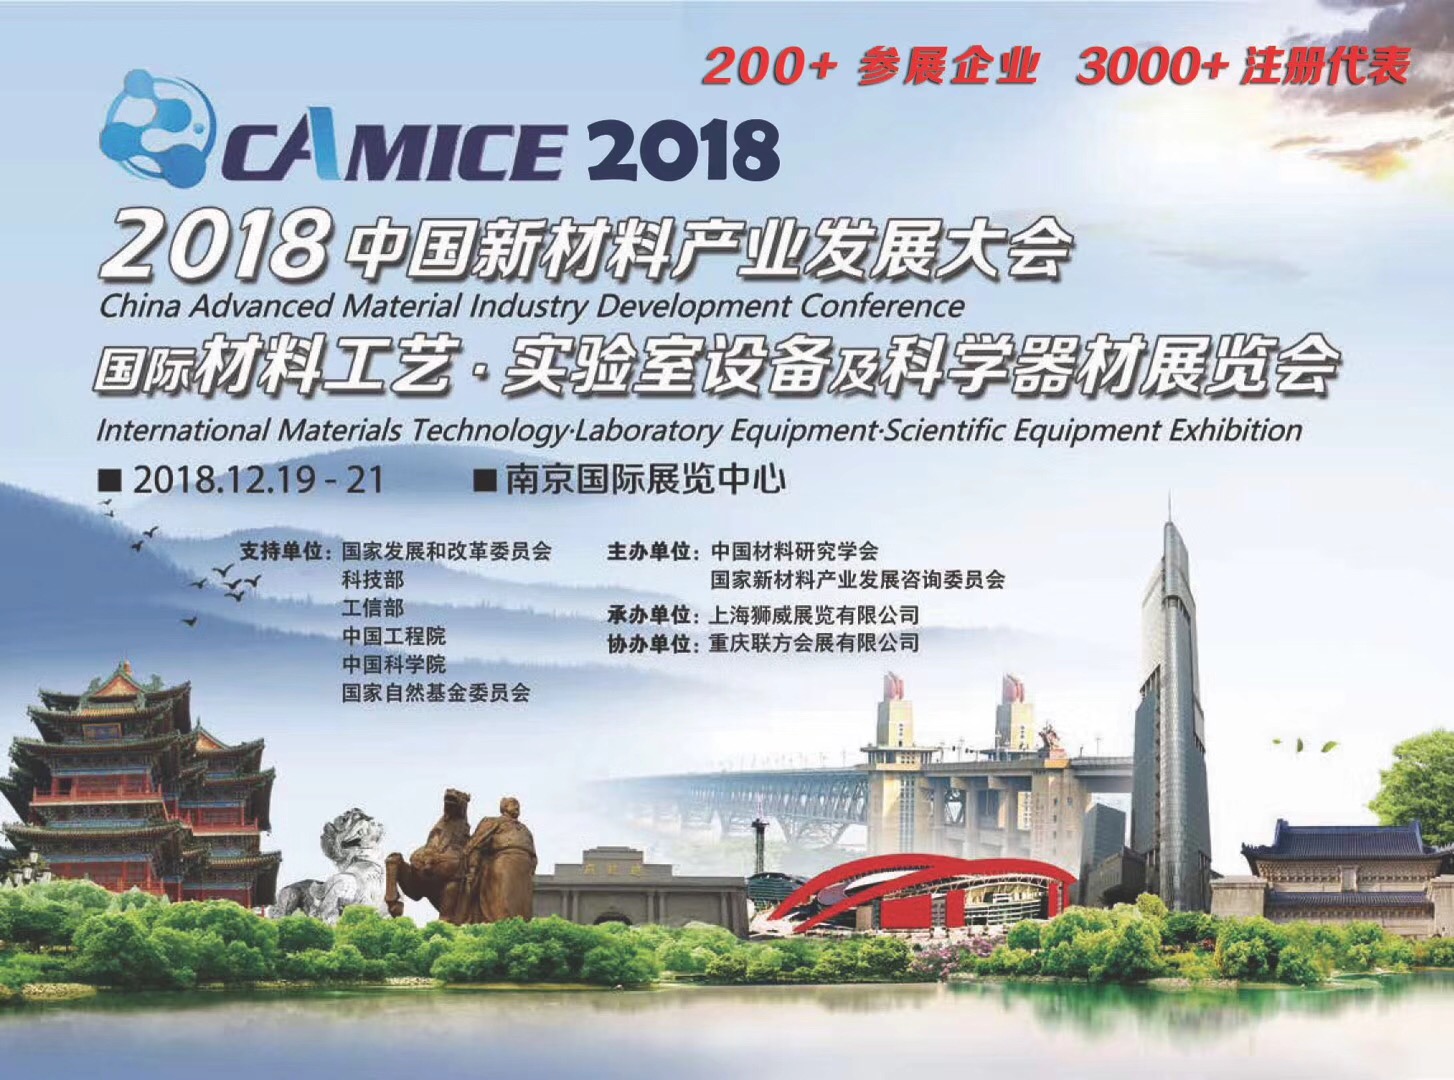 2018中国新材料产业发展大会国际材料工艺、实验室设备及科学器材展览会